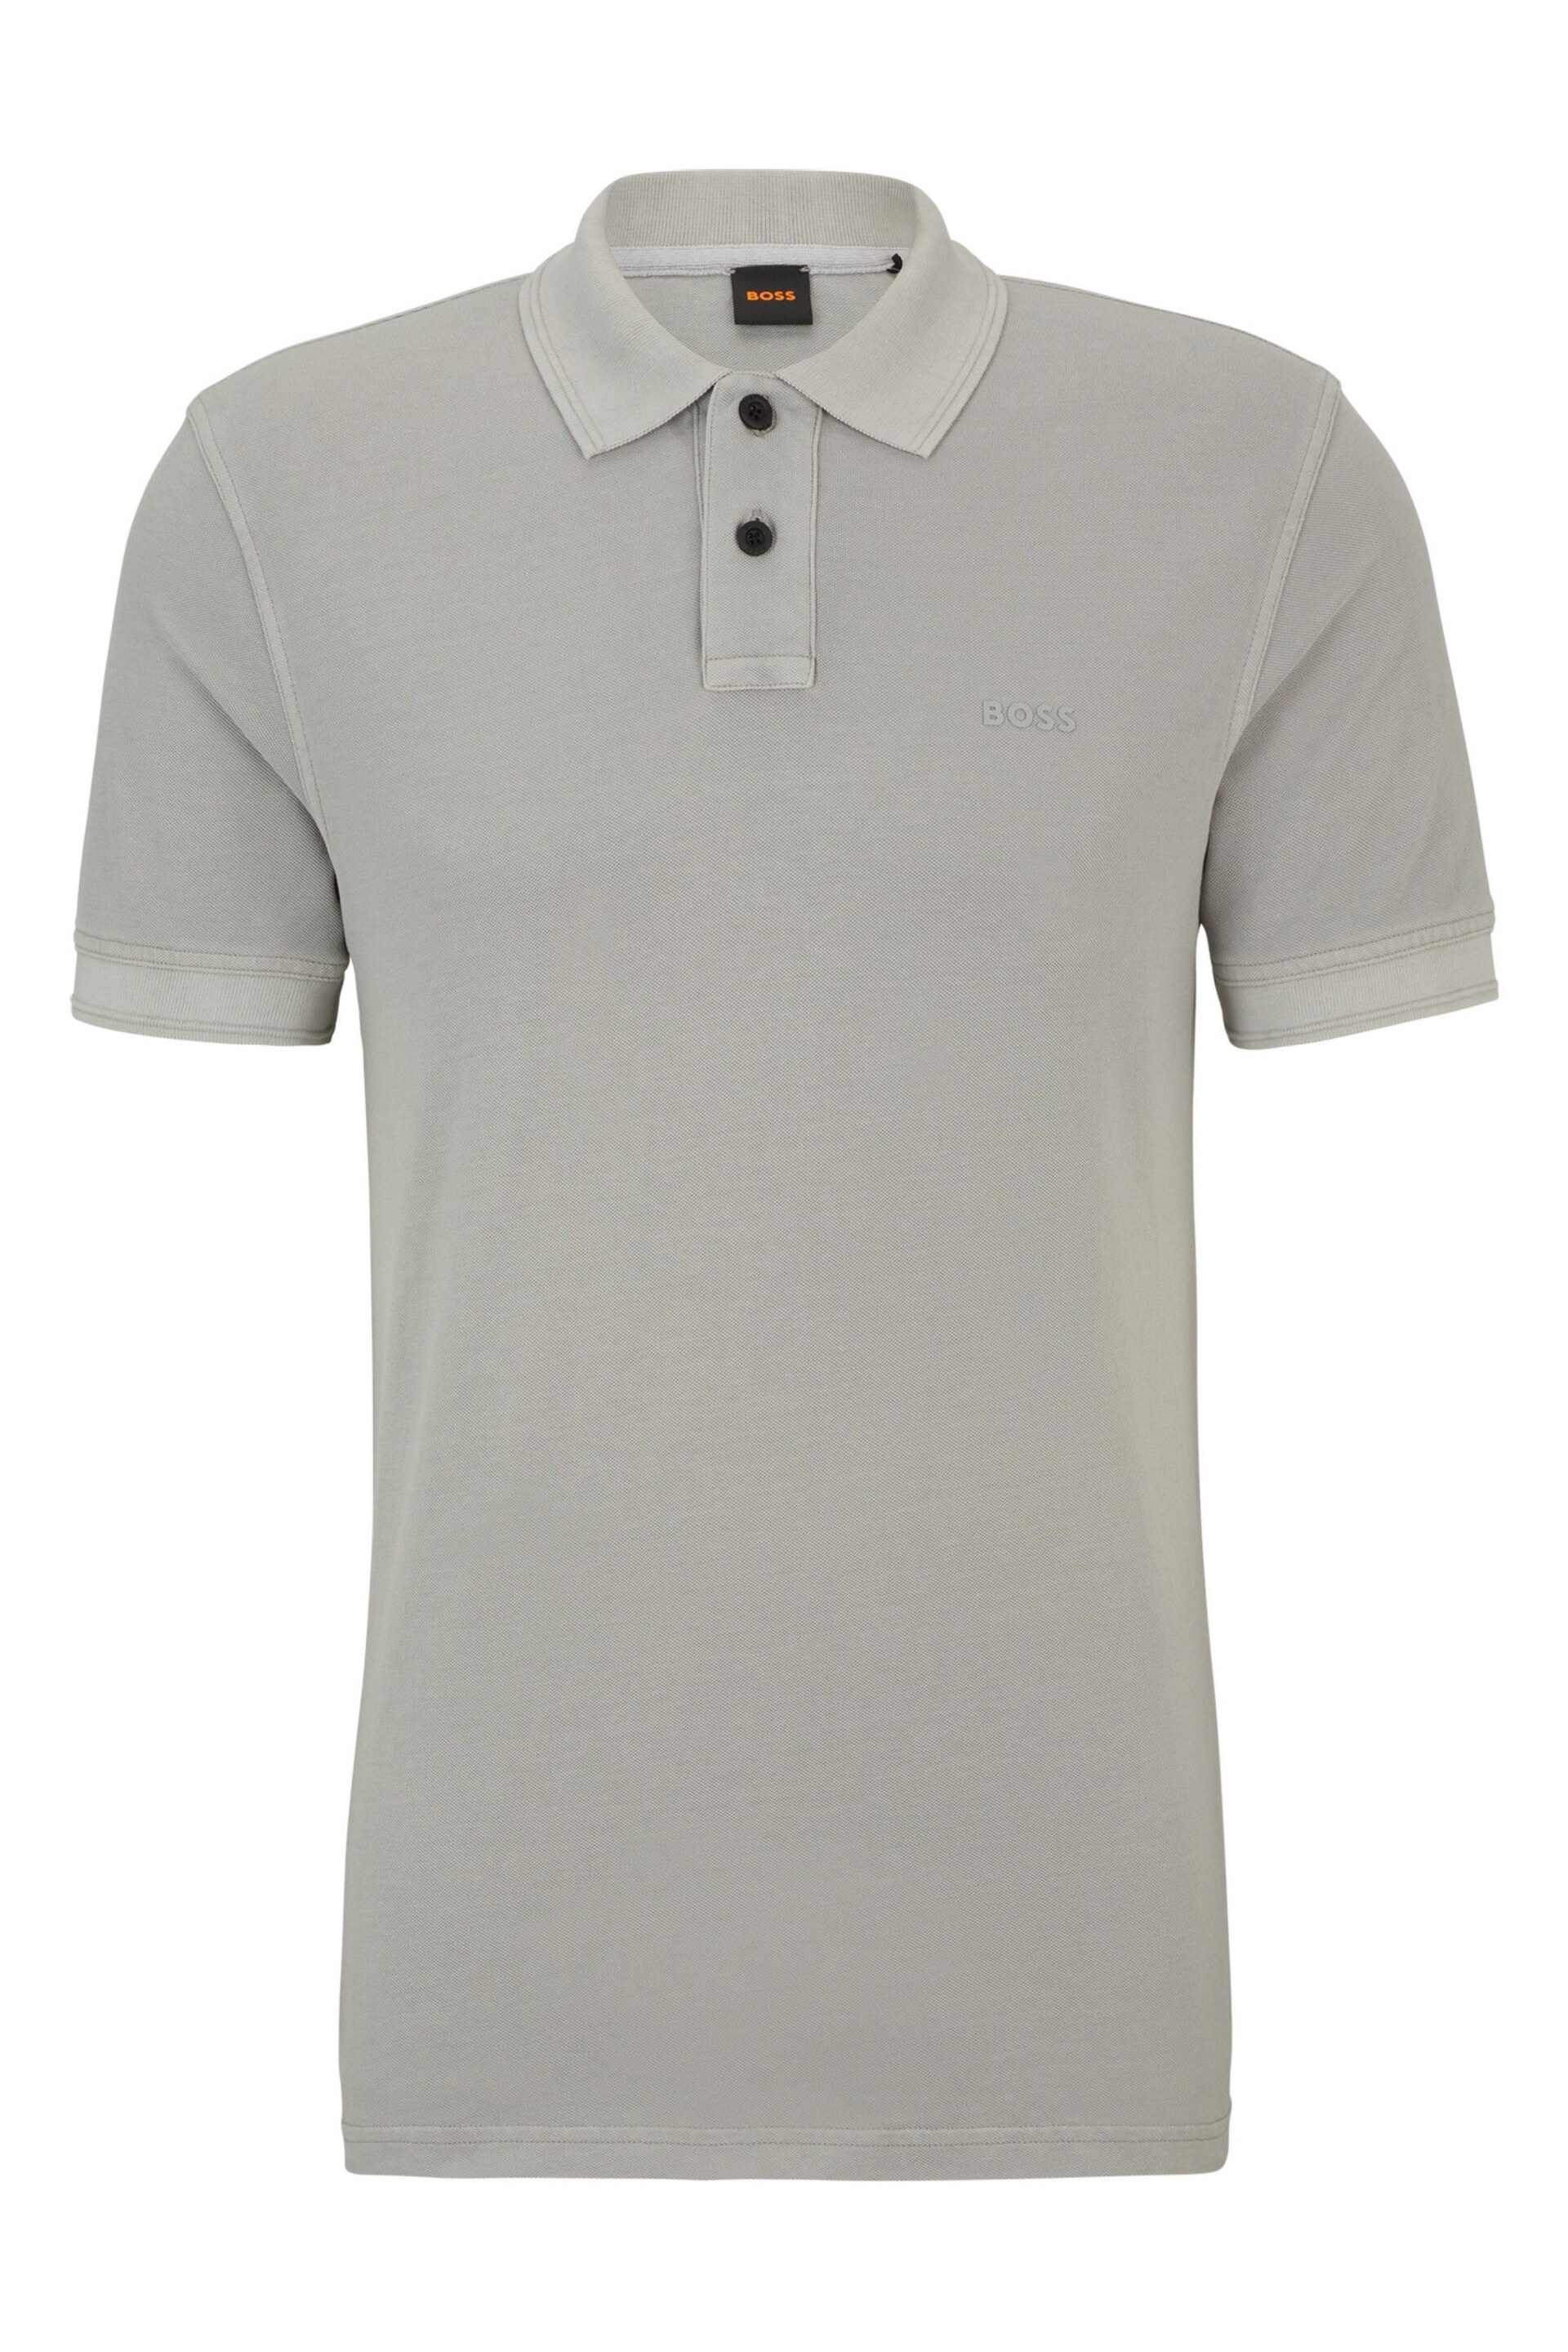 BOSS Grey Cotton Pique Polo Shirt - Image 5 of 5